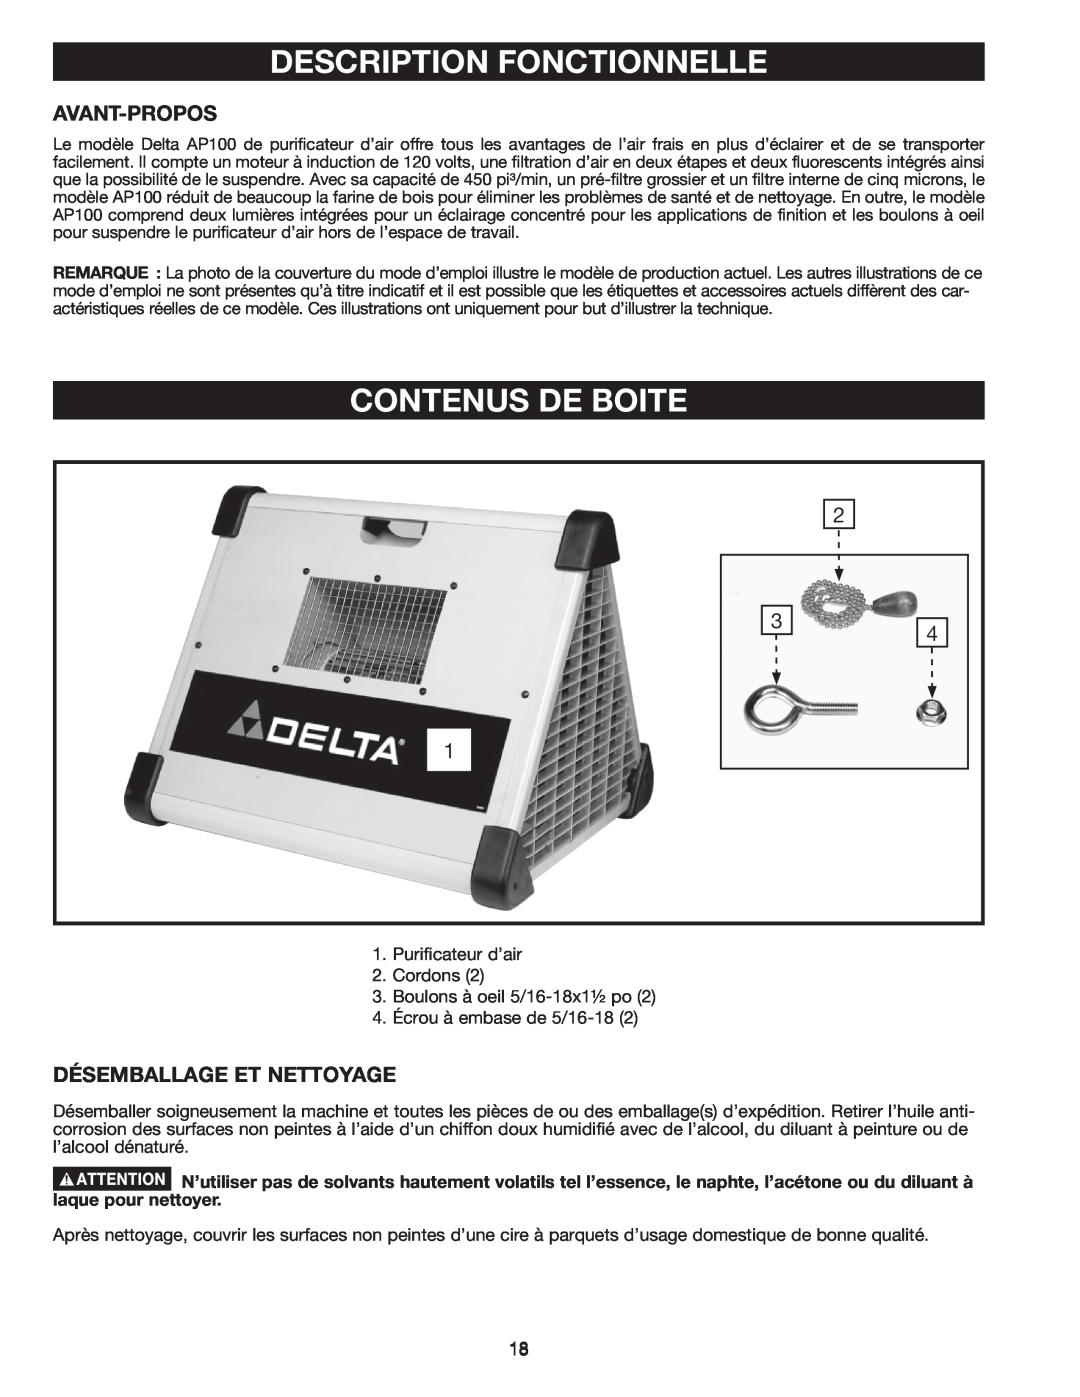 Delta AP-100 instruction manual Description Fonctionnelle, Contenus De Boite, Avant-Propos, Désemballage Et Nettoyage 